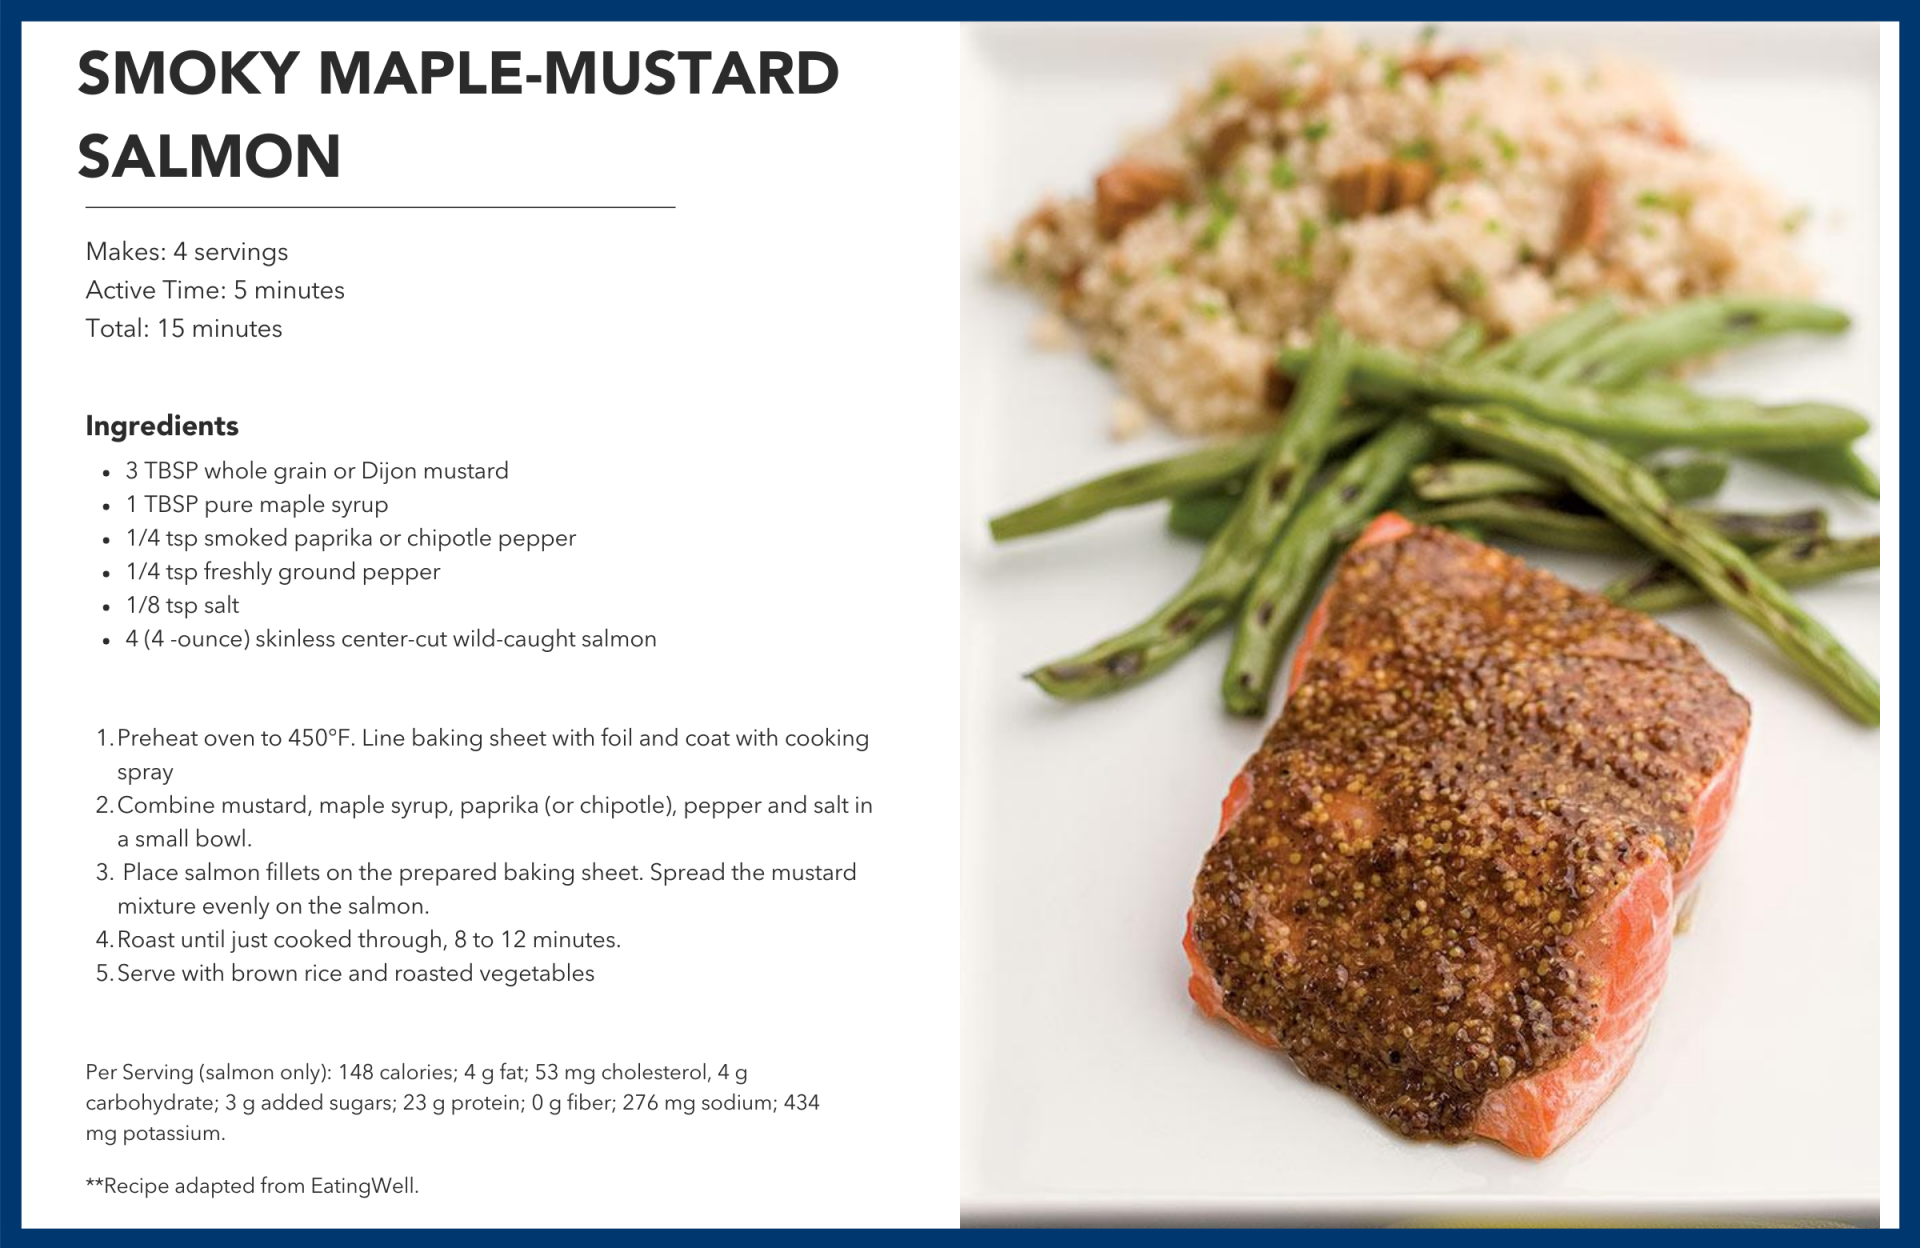 Smoky maple-mustard salmon recipe